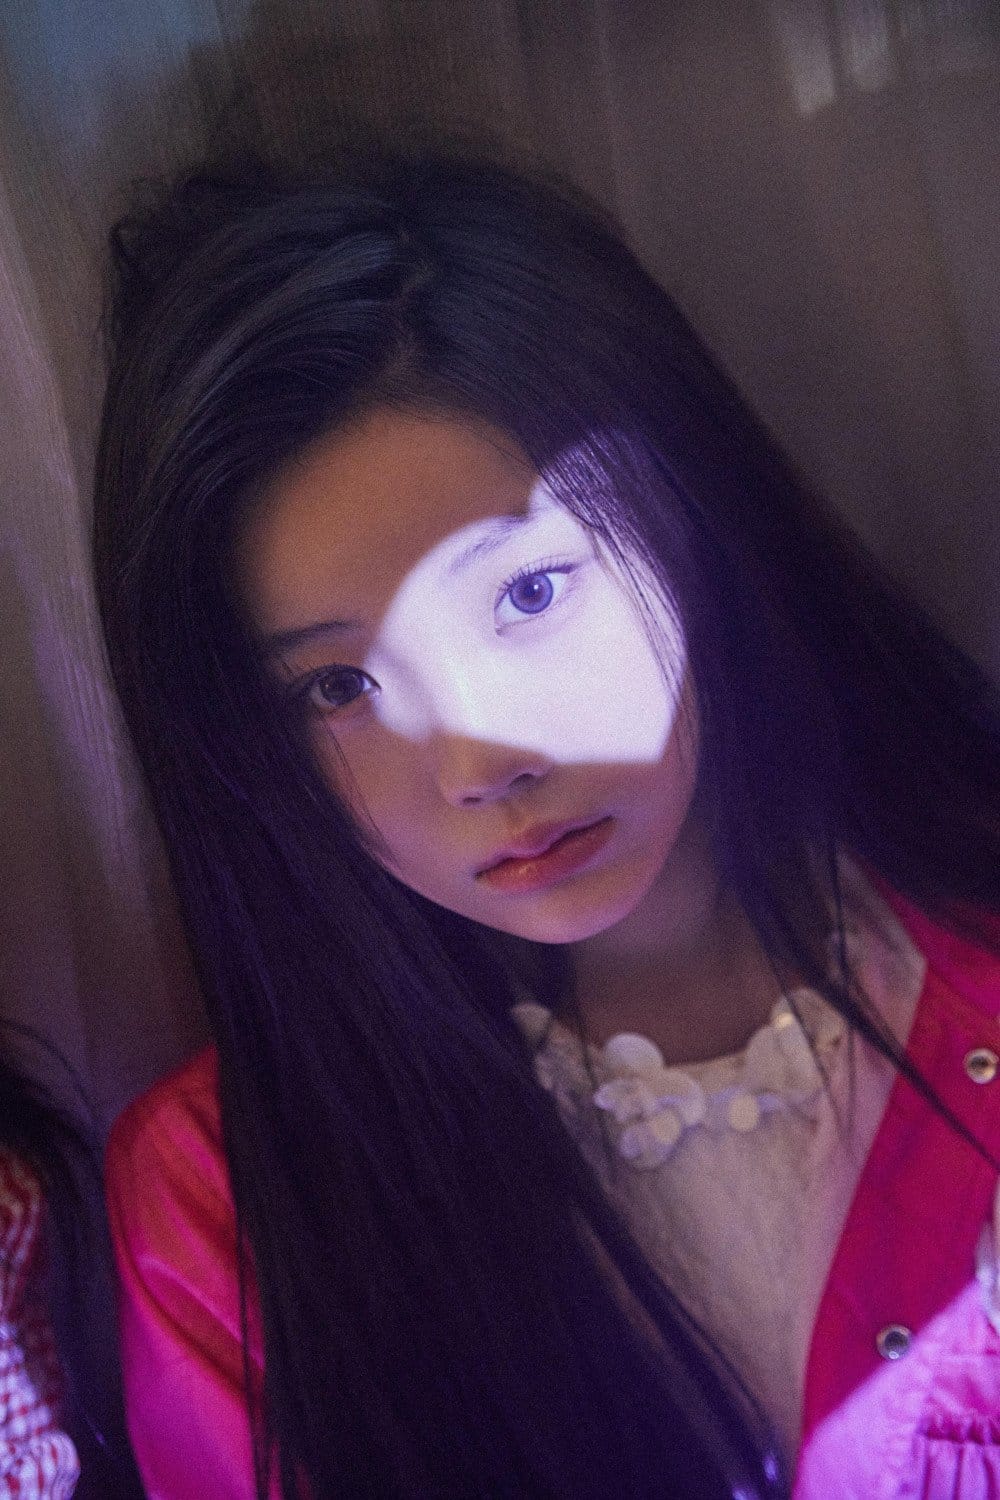 ILLIT представляют дебютный мини-альбом "Super Real Me" с милым видео-тизером и новыми фото